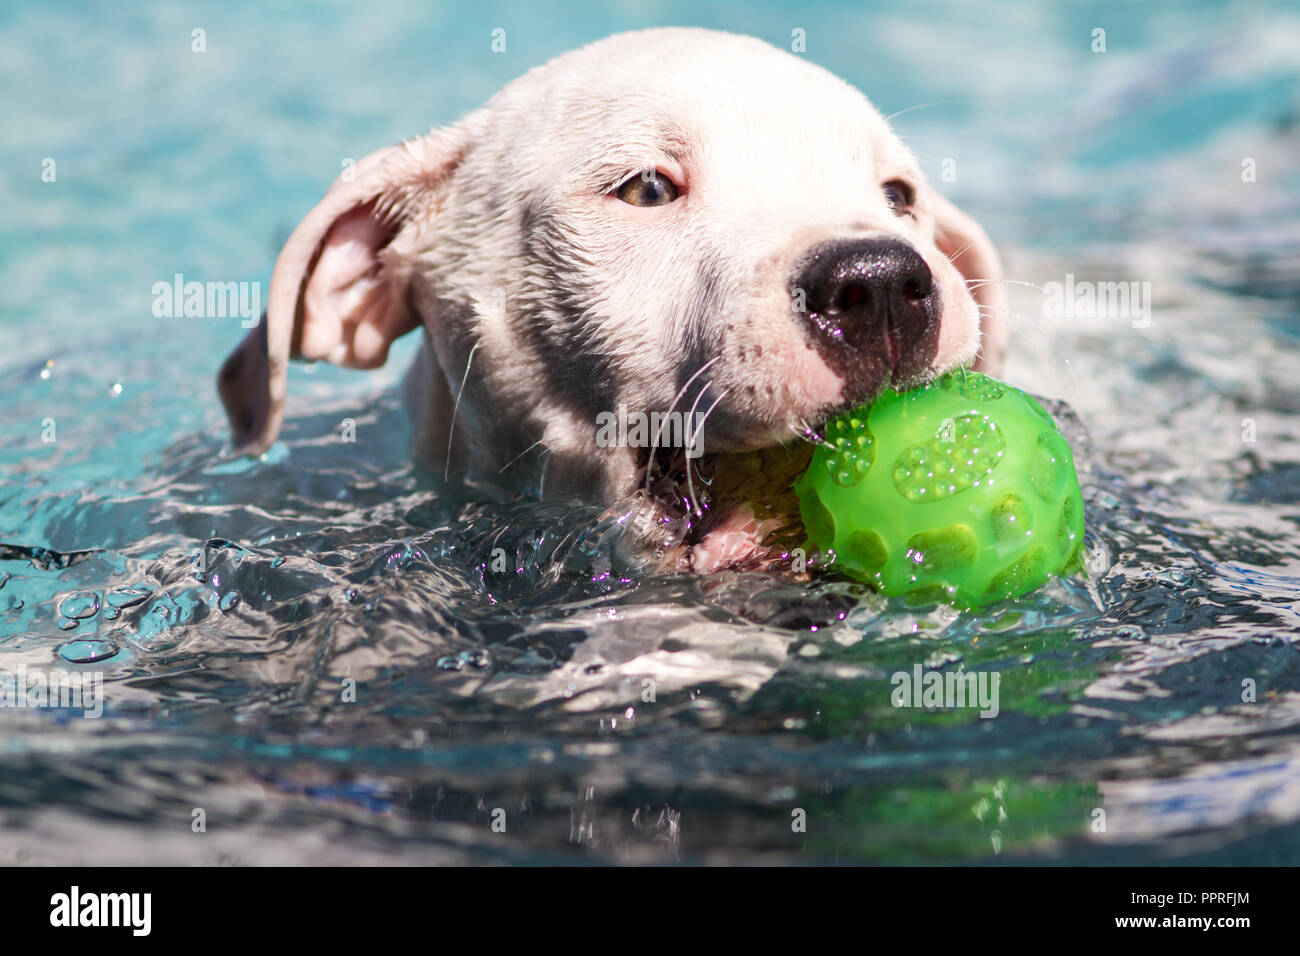 Chiot Bouledogue Américain blanc de nager dans une piscine et de l'extraction d'une balle Banque D'Images